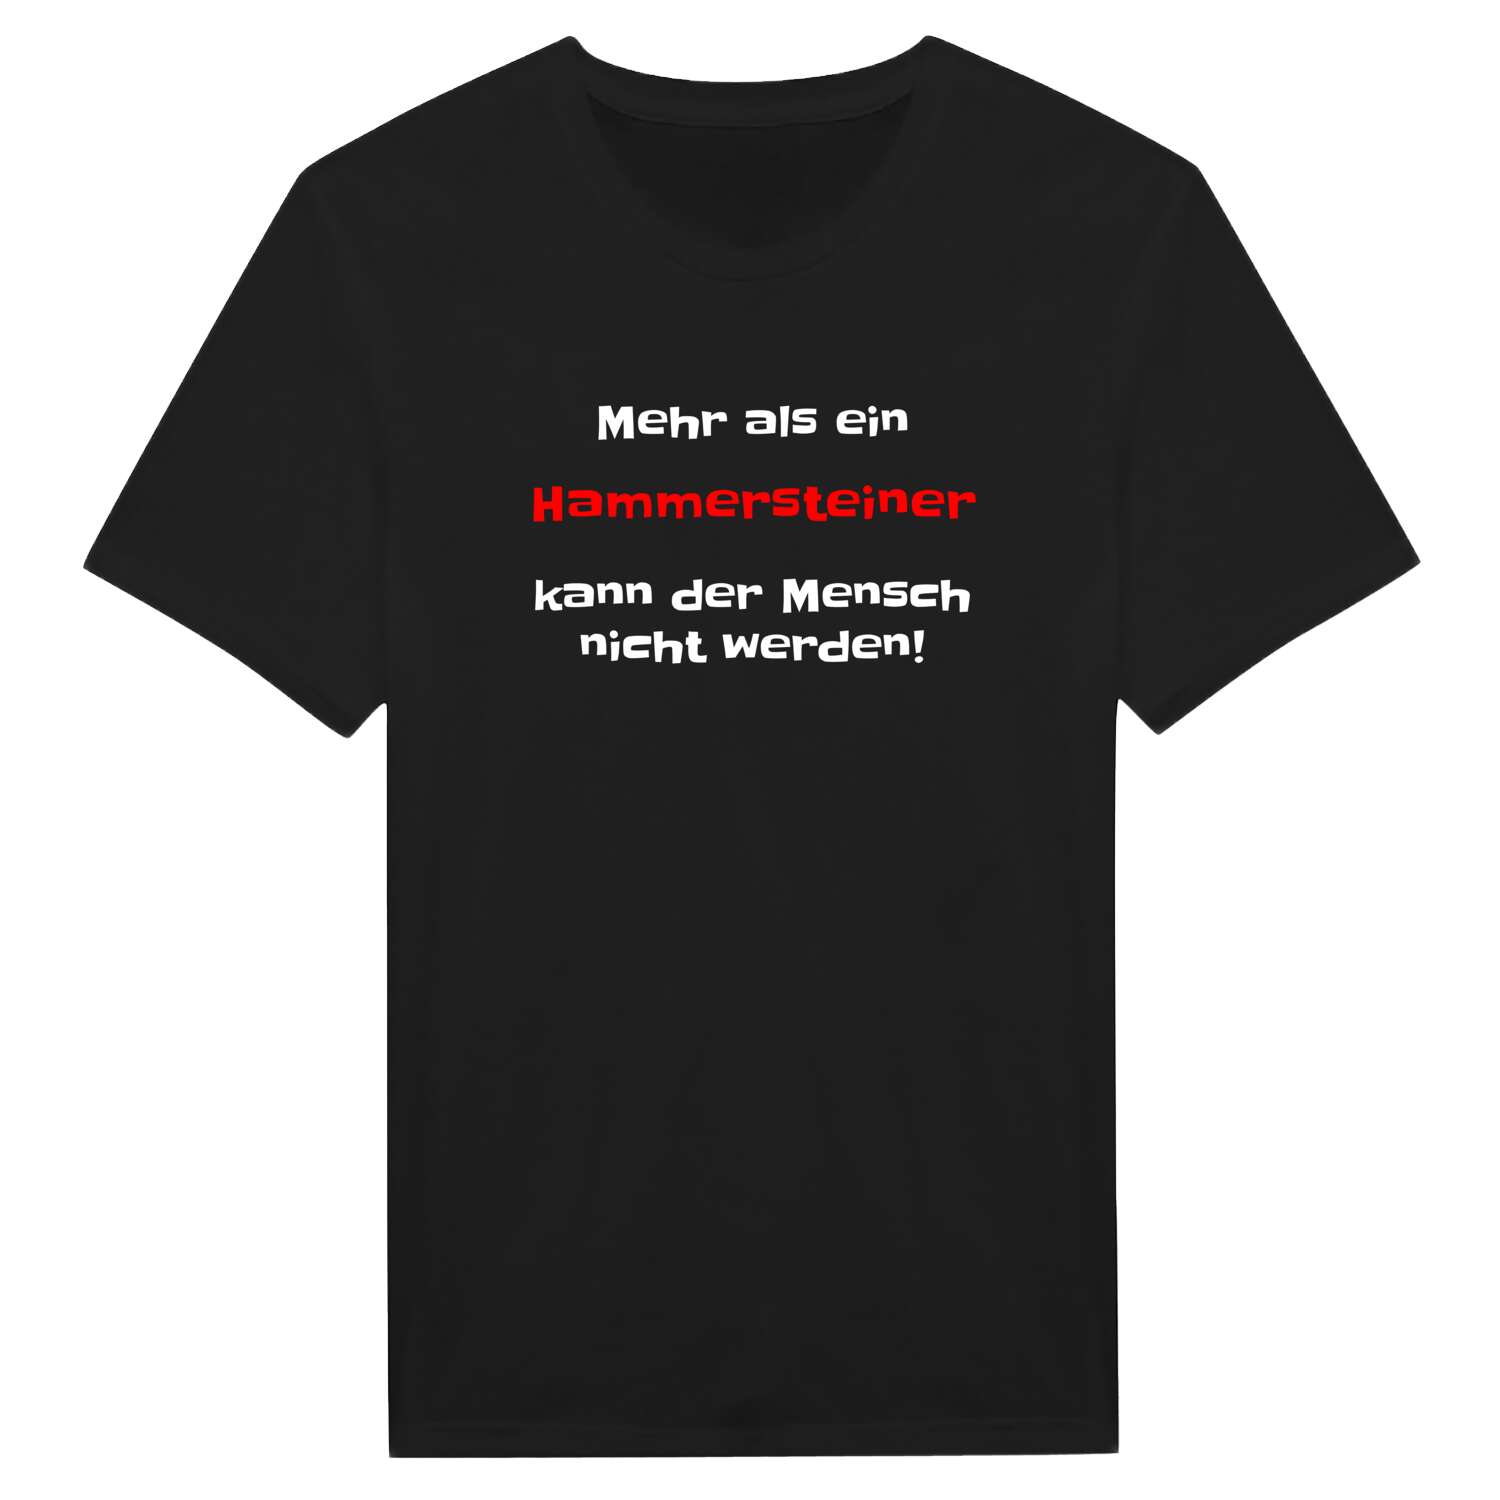 Hammerstein T-Shirt »Mehr als ein«